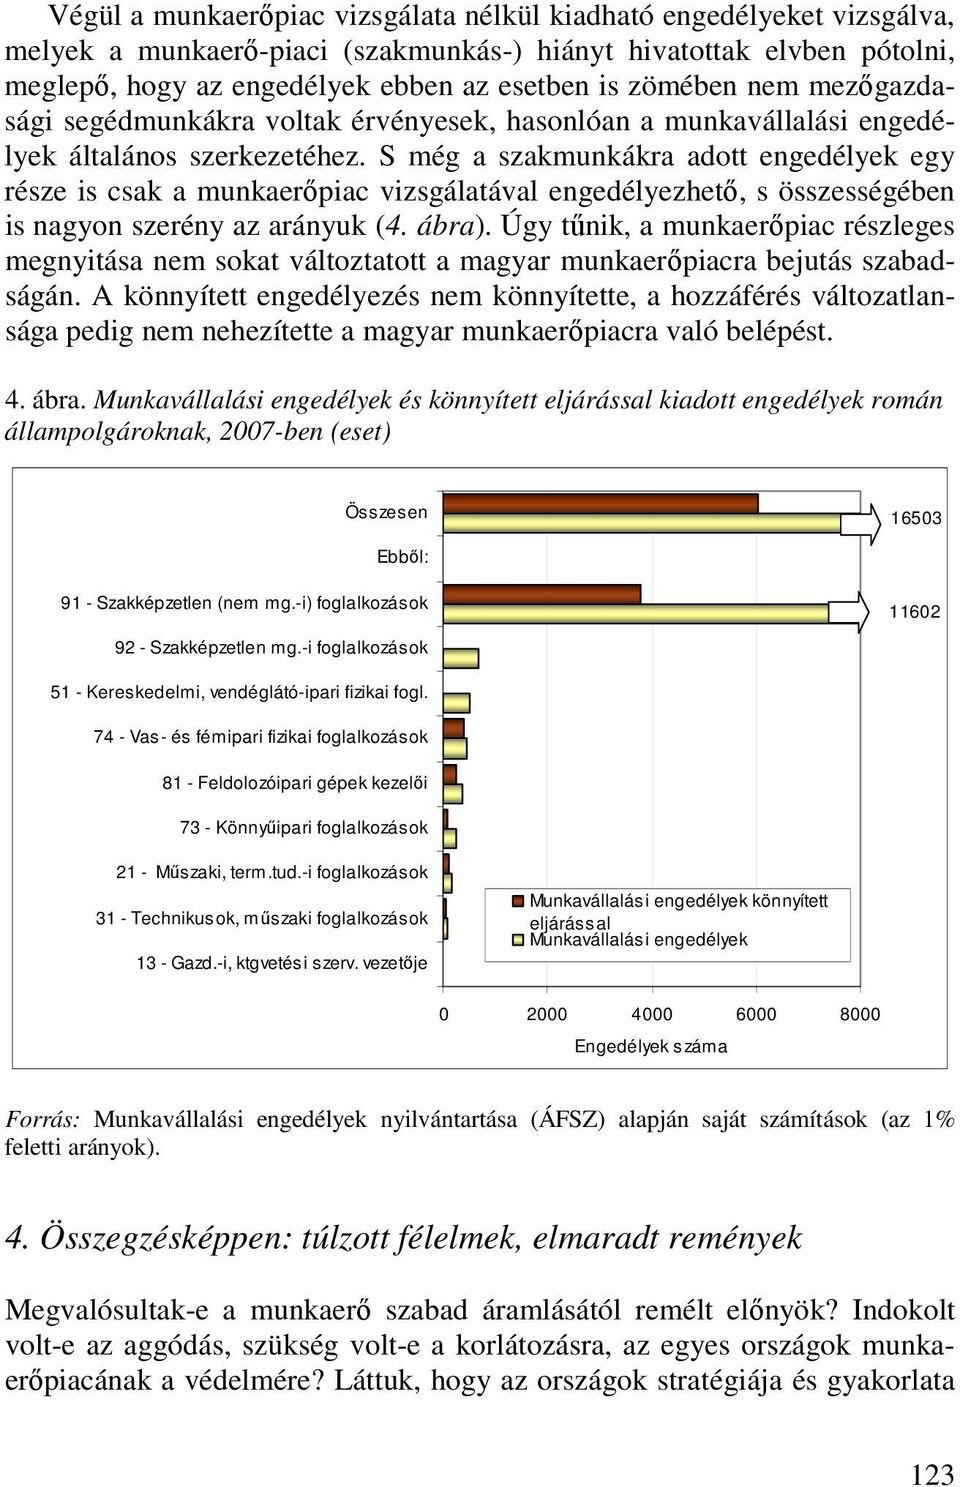 S még a szakmunkákra adott engedélyek egy része is csak a munkaerıpiac vizsgálatával engedélyezhetı, s összességében is nagyon szerény az arányuk (4. ábra).